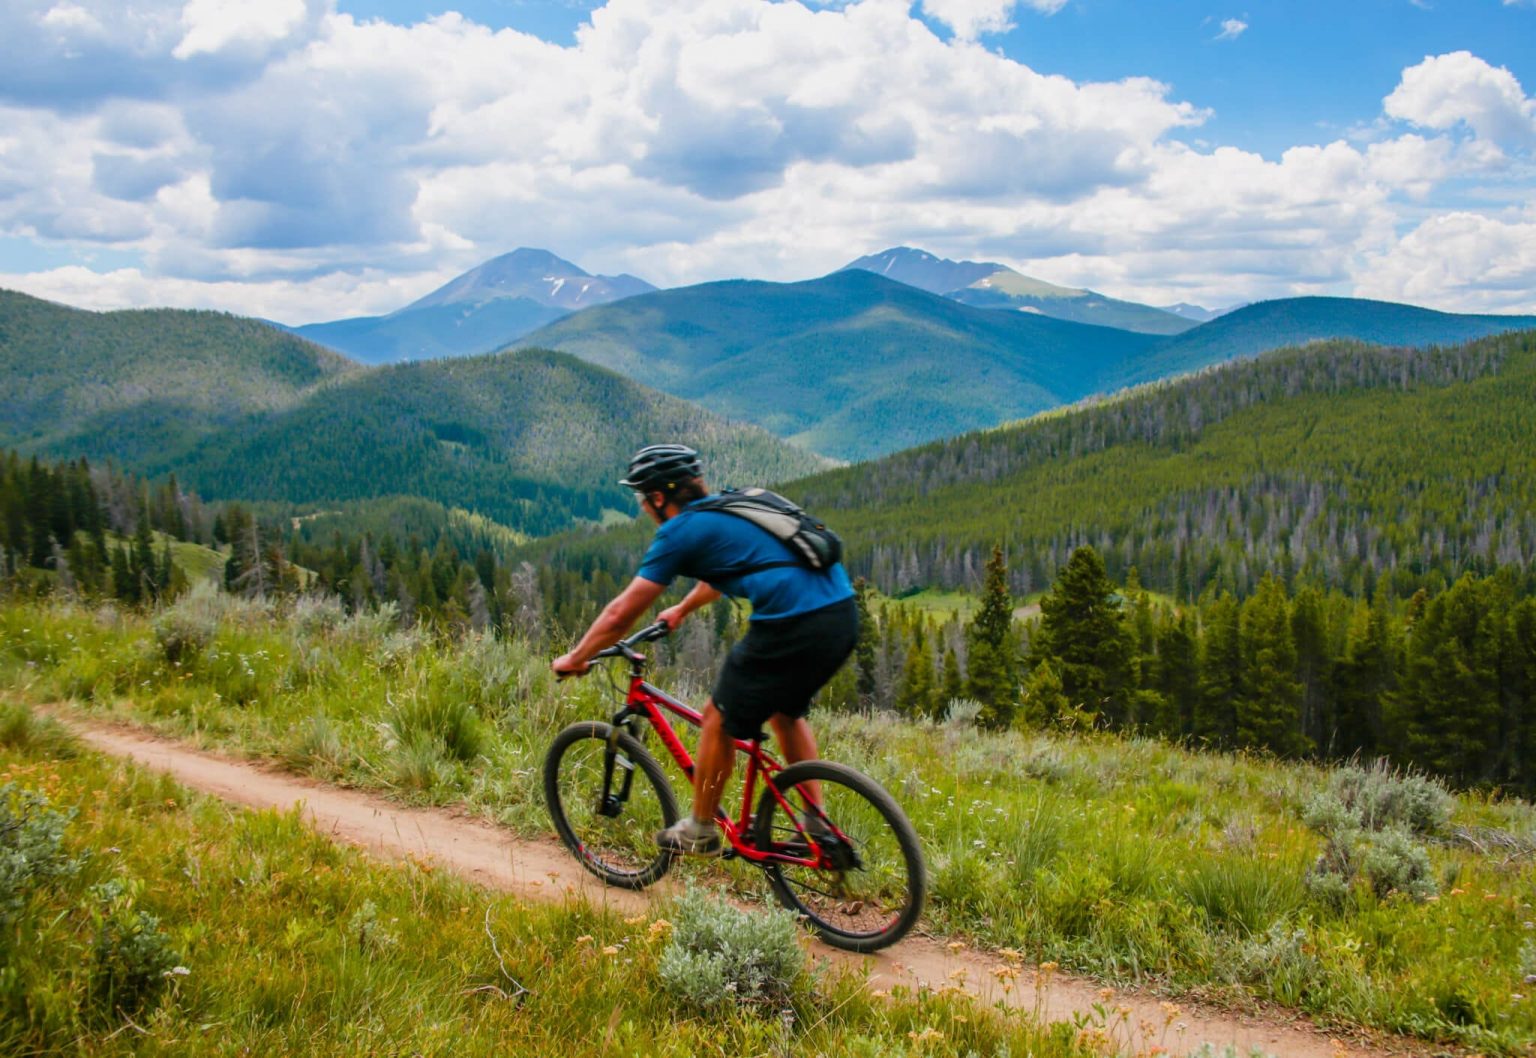 A mountain biker on the Colorado Trail in Breckenridge.